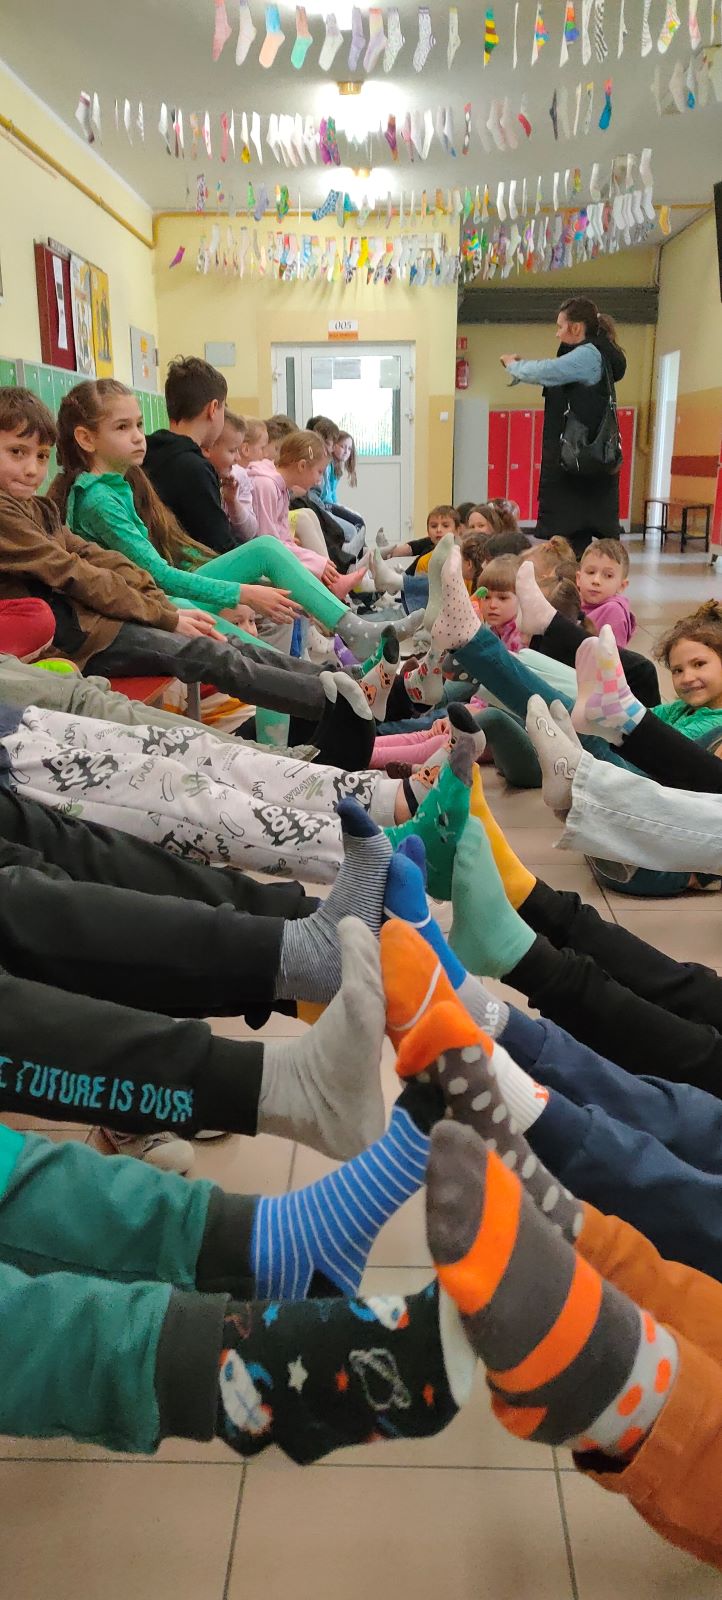 Uczniowie klas 1-3 siedząc na podłodze podnoszą nogi do góry pokazując założone kolorowe skarpetki nie do pary.